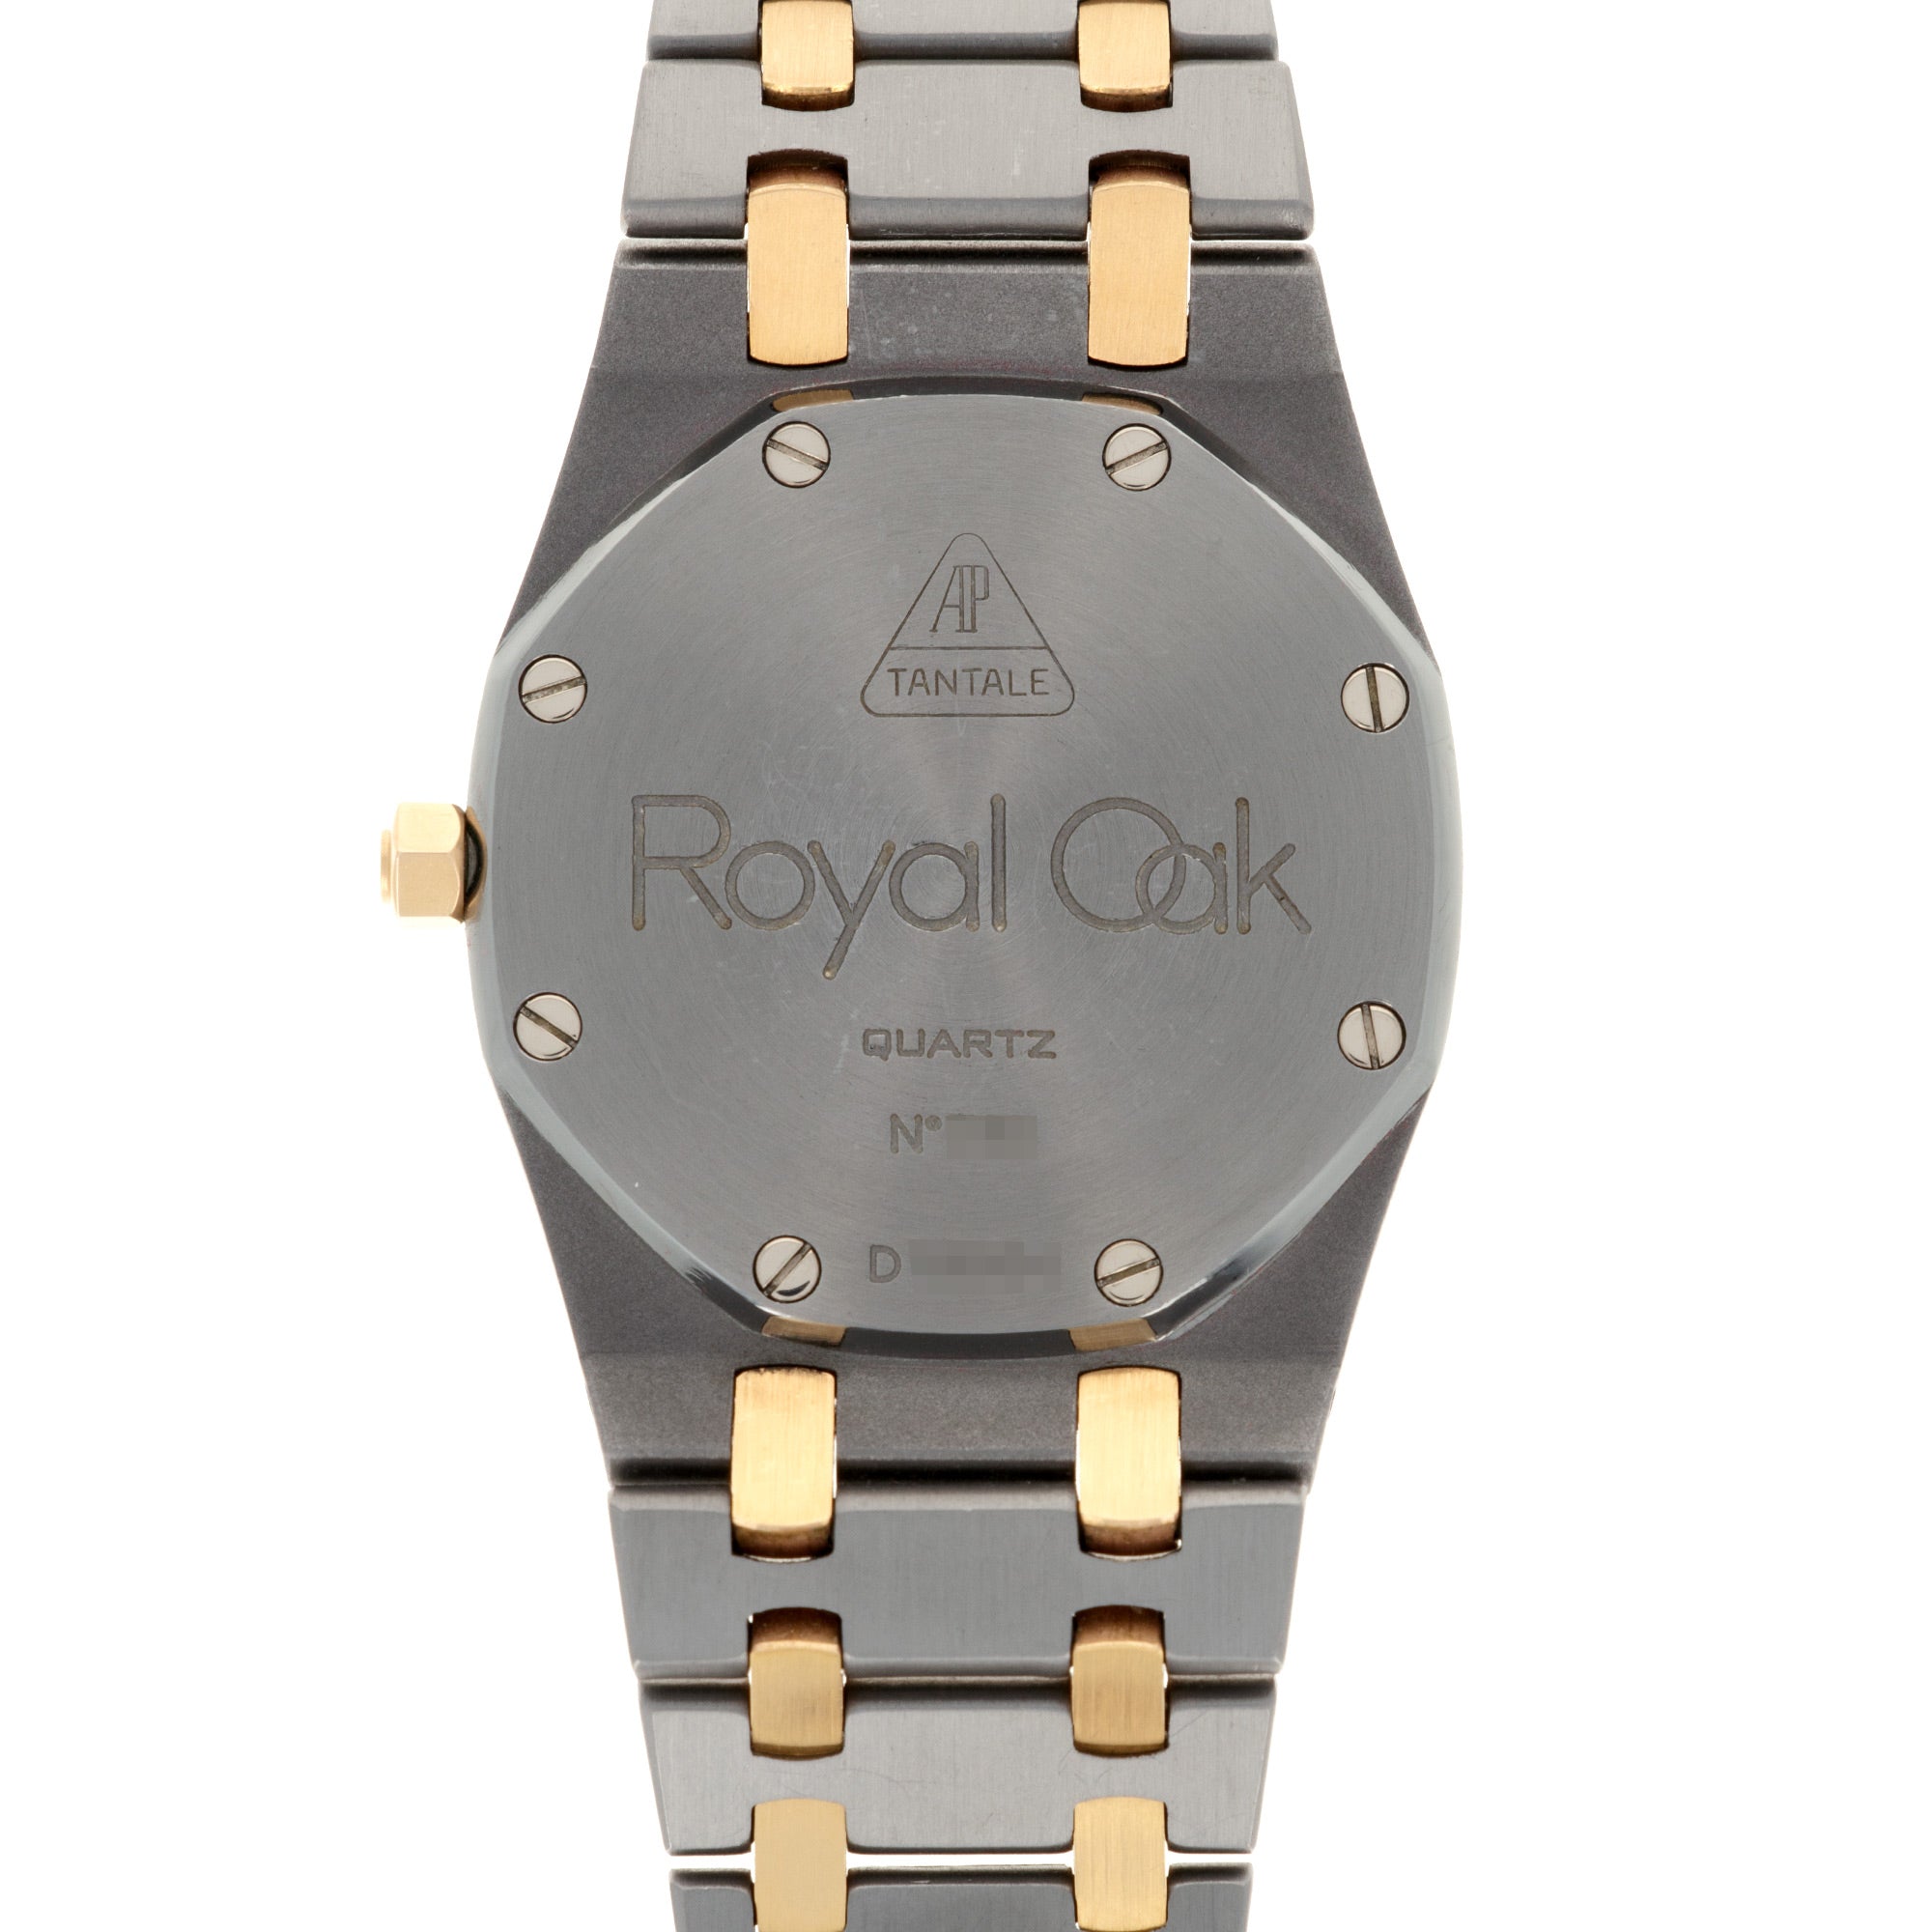 Audemars Piguet - Audemars Piguet Royal Oak Tantalum and Rose Ref. 56175 - The Keystone Watches